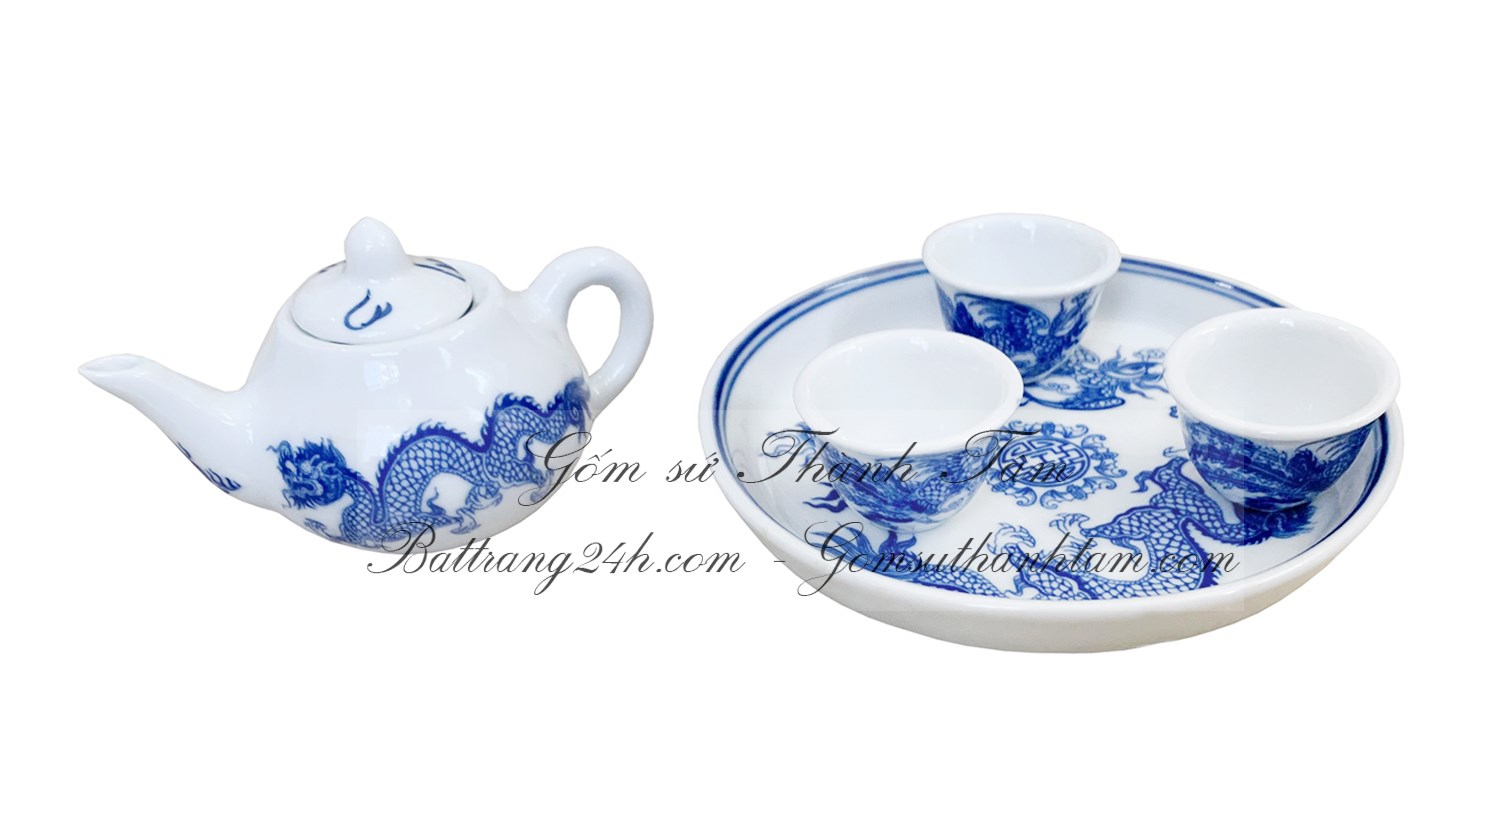 Bán bộ ấm chén uống trà mini đựng trà cúng bằng gốm sứ Bát Tràng men xanh vẽ rồng chầu mặt nguyệt đẹp mắt